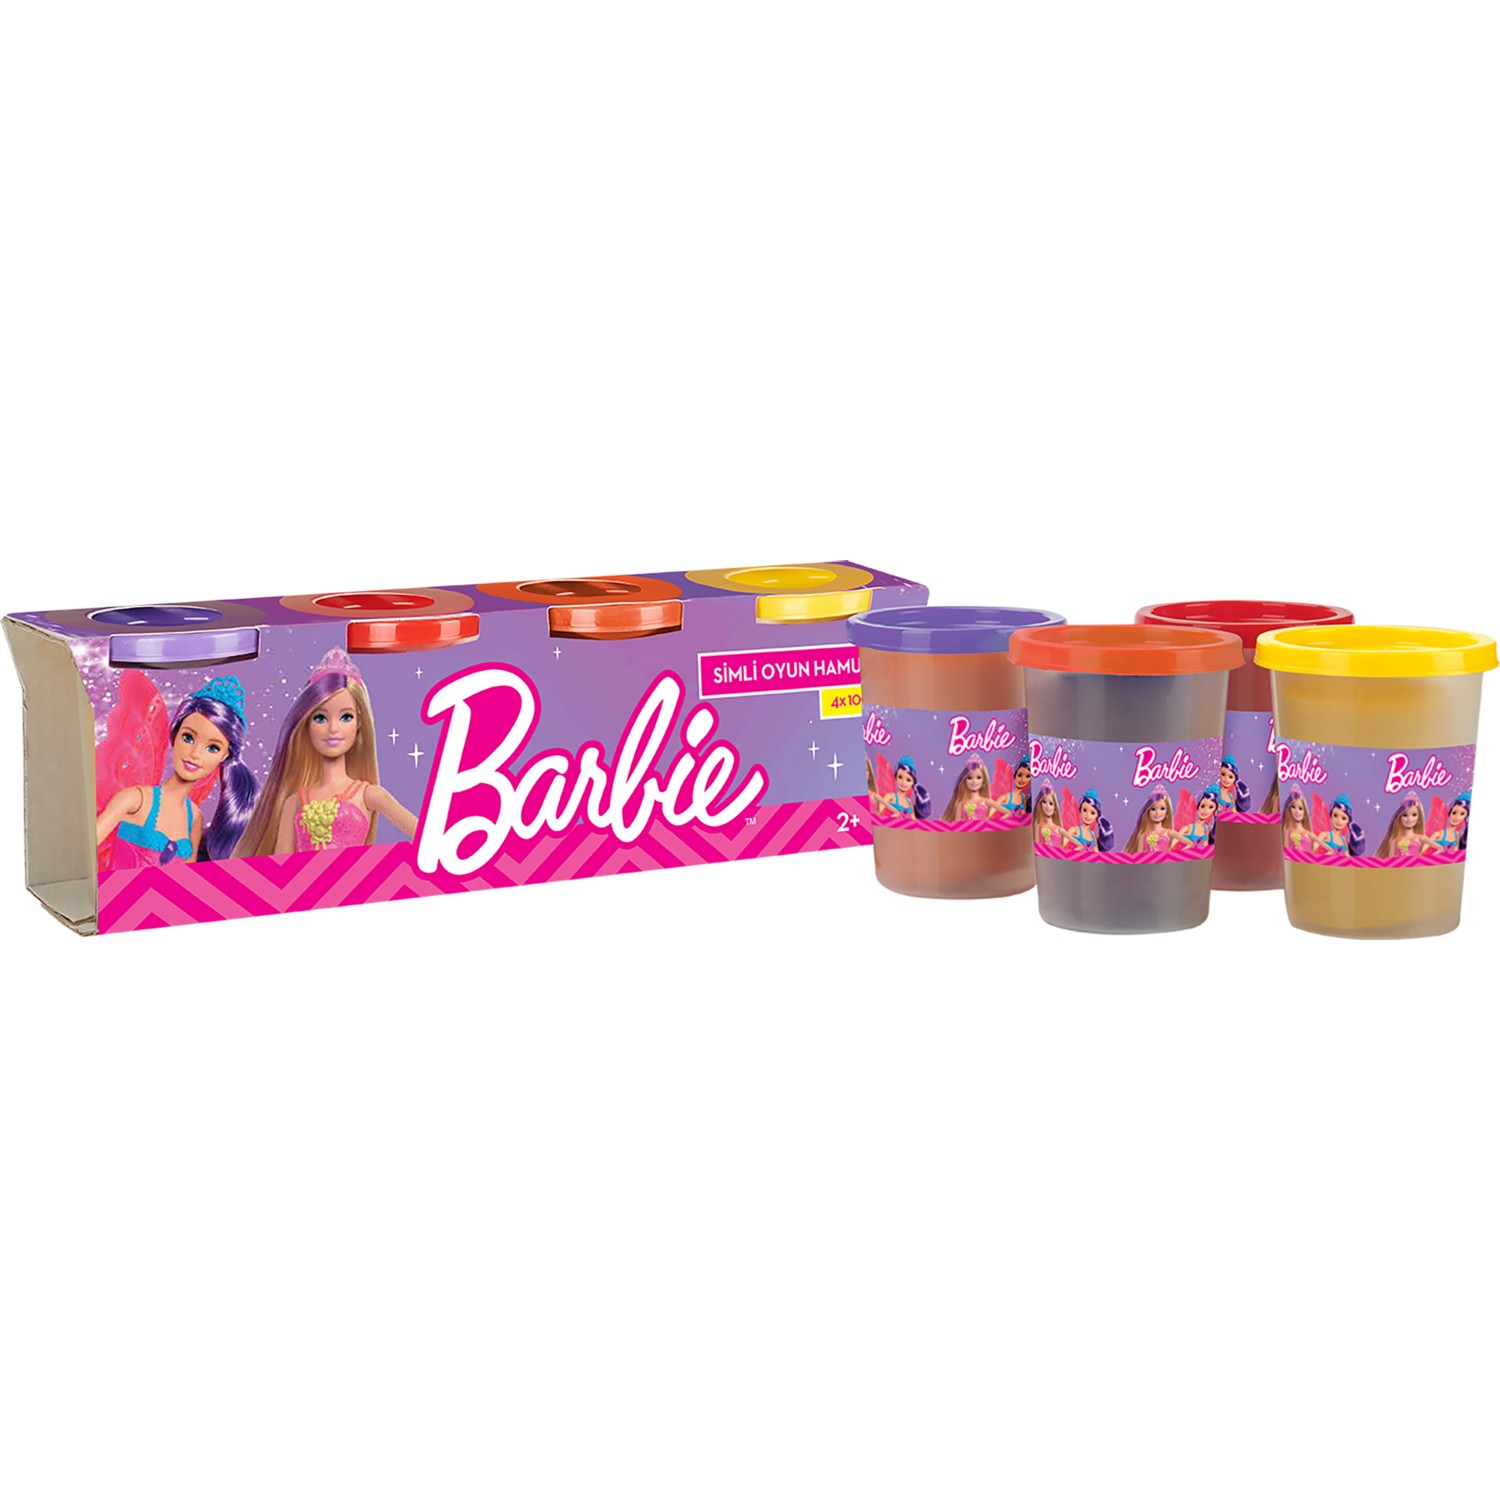 Игровой набор Barbie тесто для лепки, 4 цвета набор для лепки on time единорог тесто 4 цвета 230 г пластиковый единорог 16 аксессуаров 45091